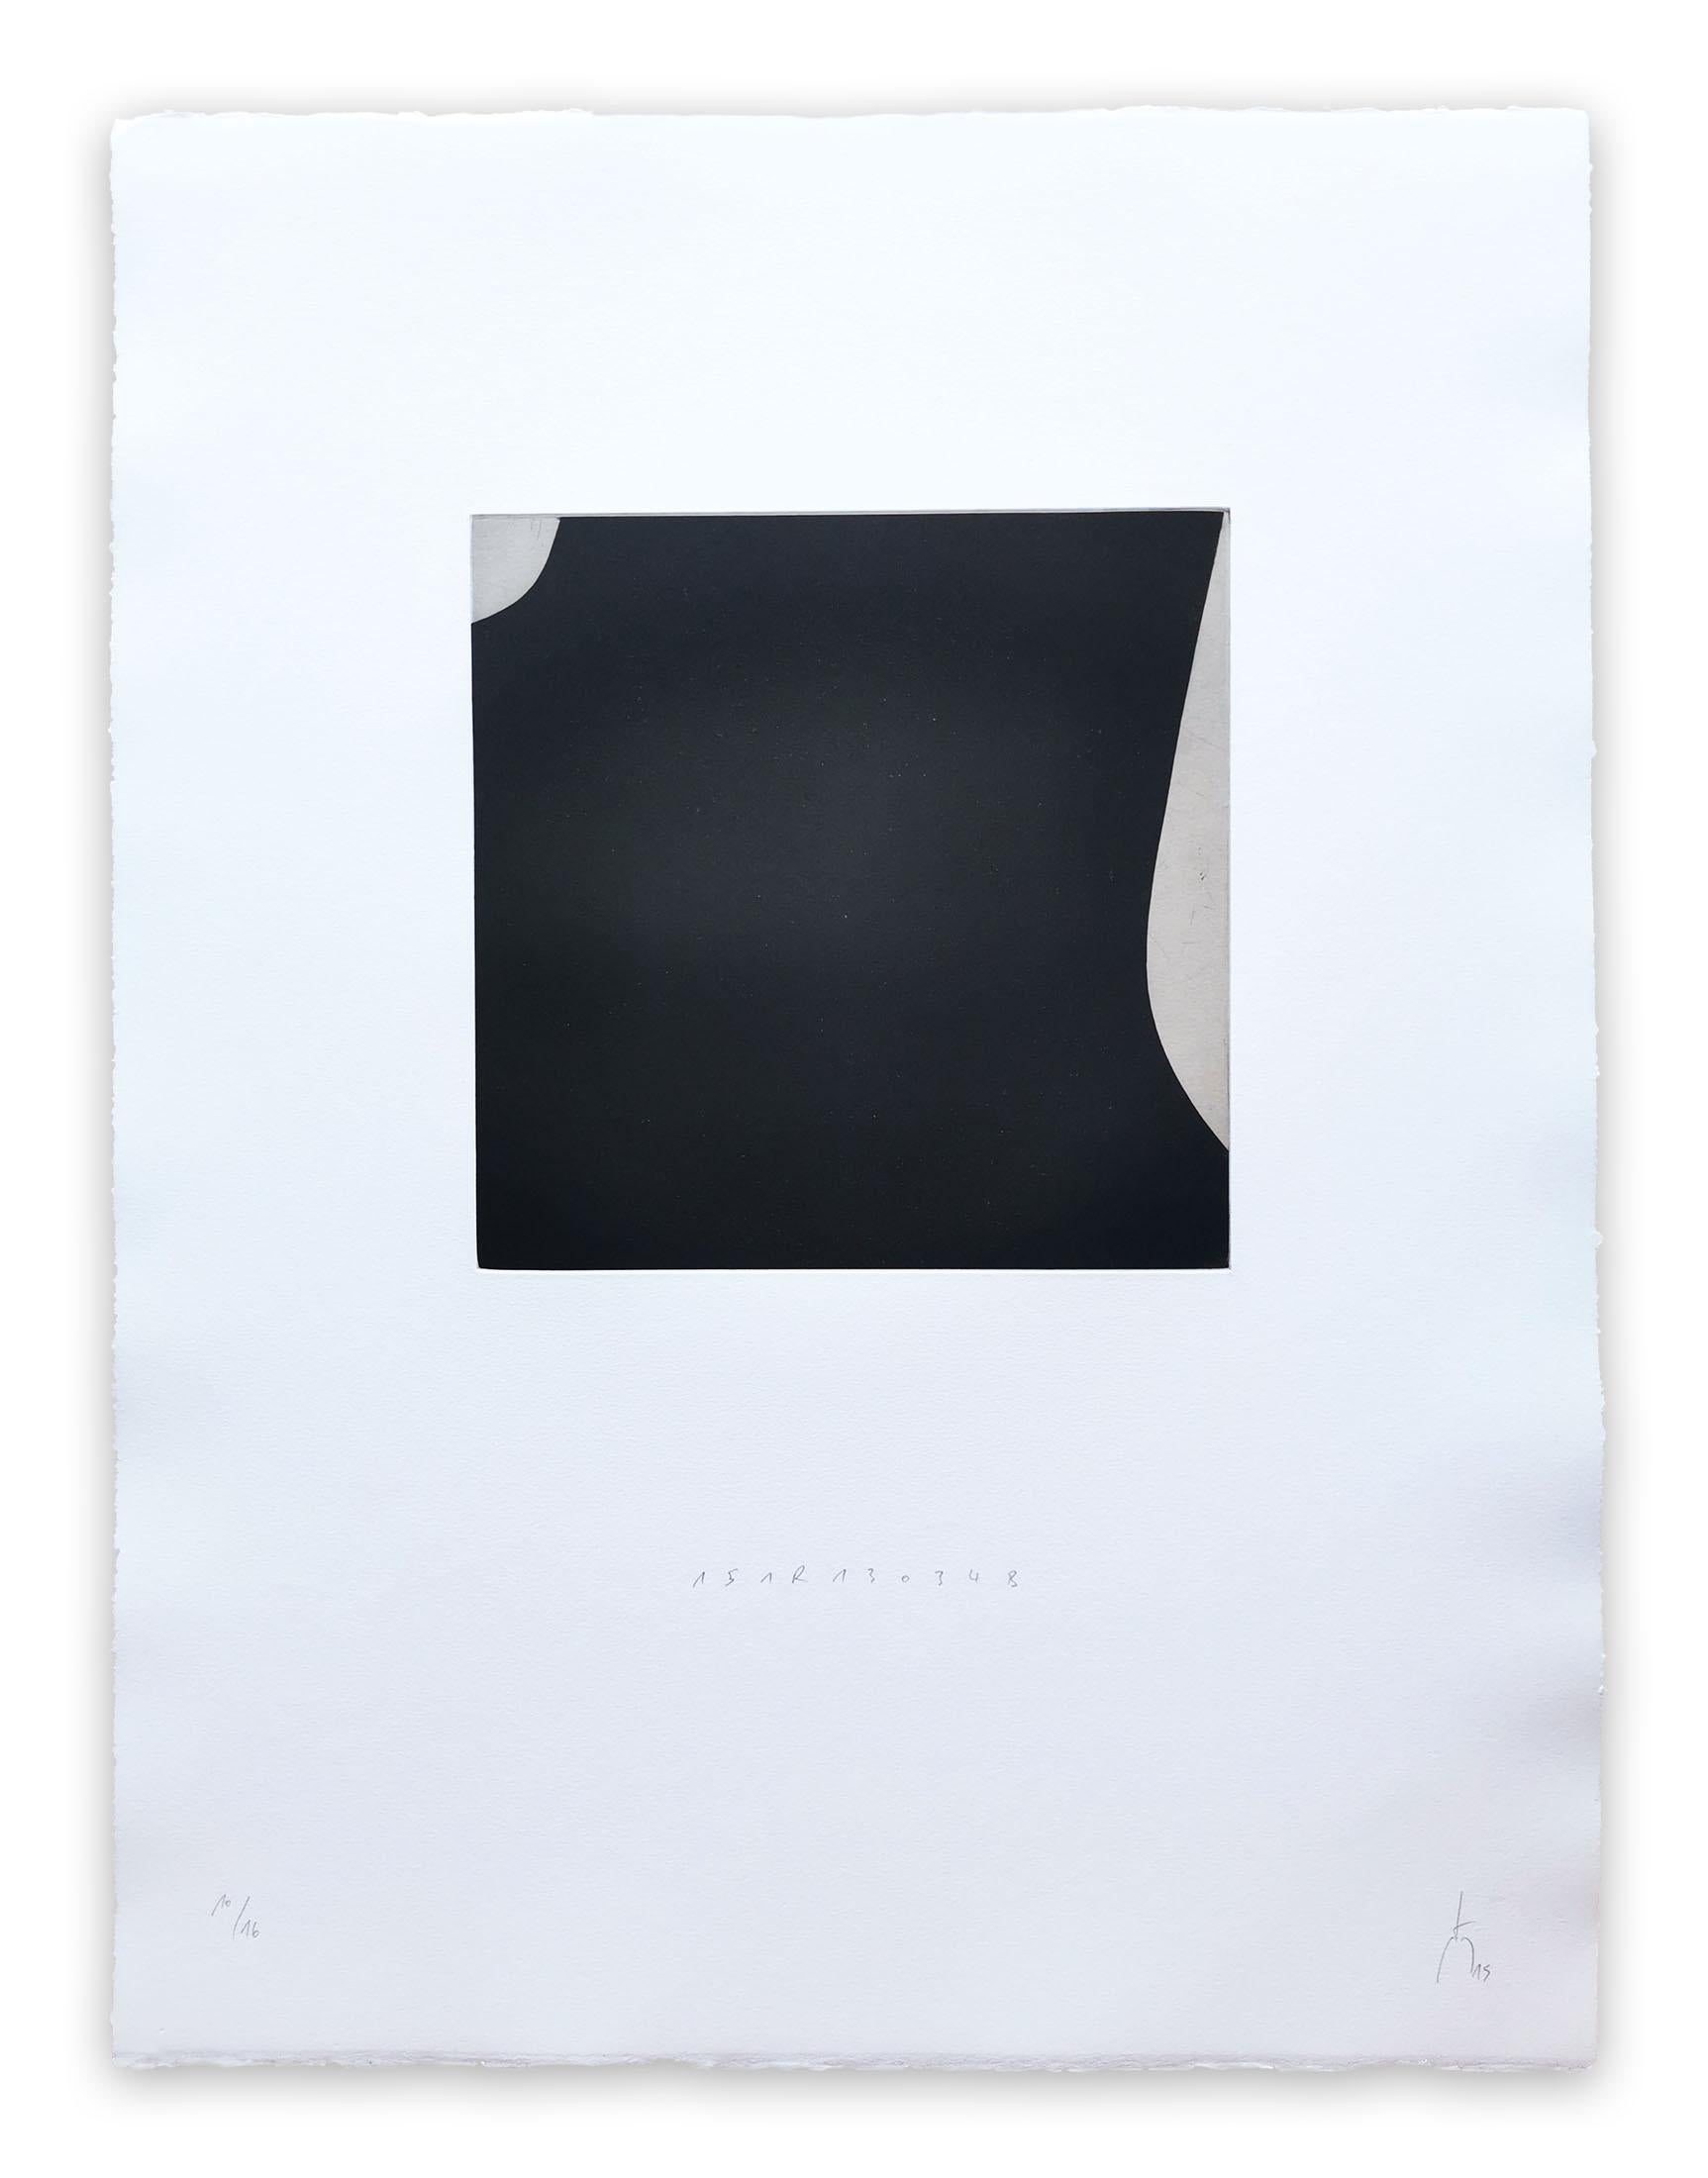 Kupferstichdruck auf BFK Rives Papier 250g - ungerahmt.

Dieses Kunstwerk wird als Triptychon verkauft. Jeder Druck hat die Maße 65 x 50 cm/25,5 x 19,6 Zoll.

Ausgabe: 10/16

Seit 2010 hat Pierre Muckensturm die Druckgrafik in sein Werk